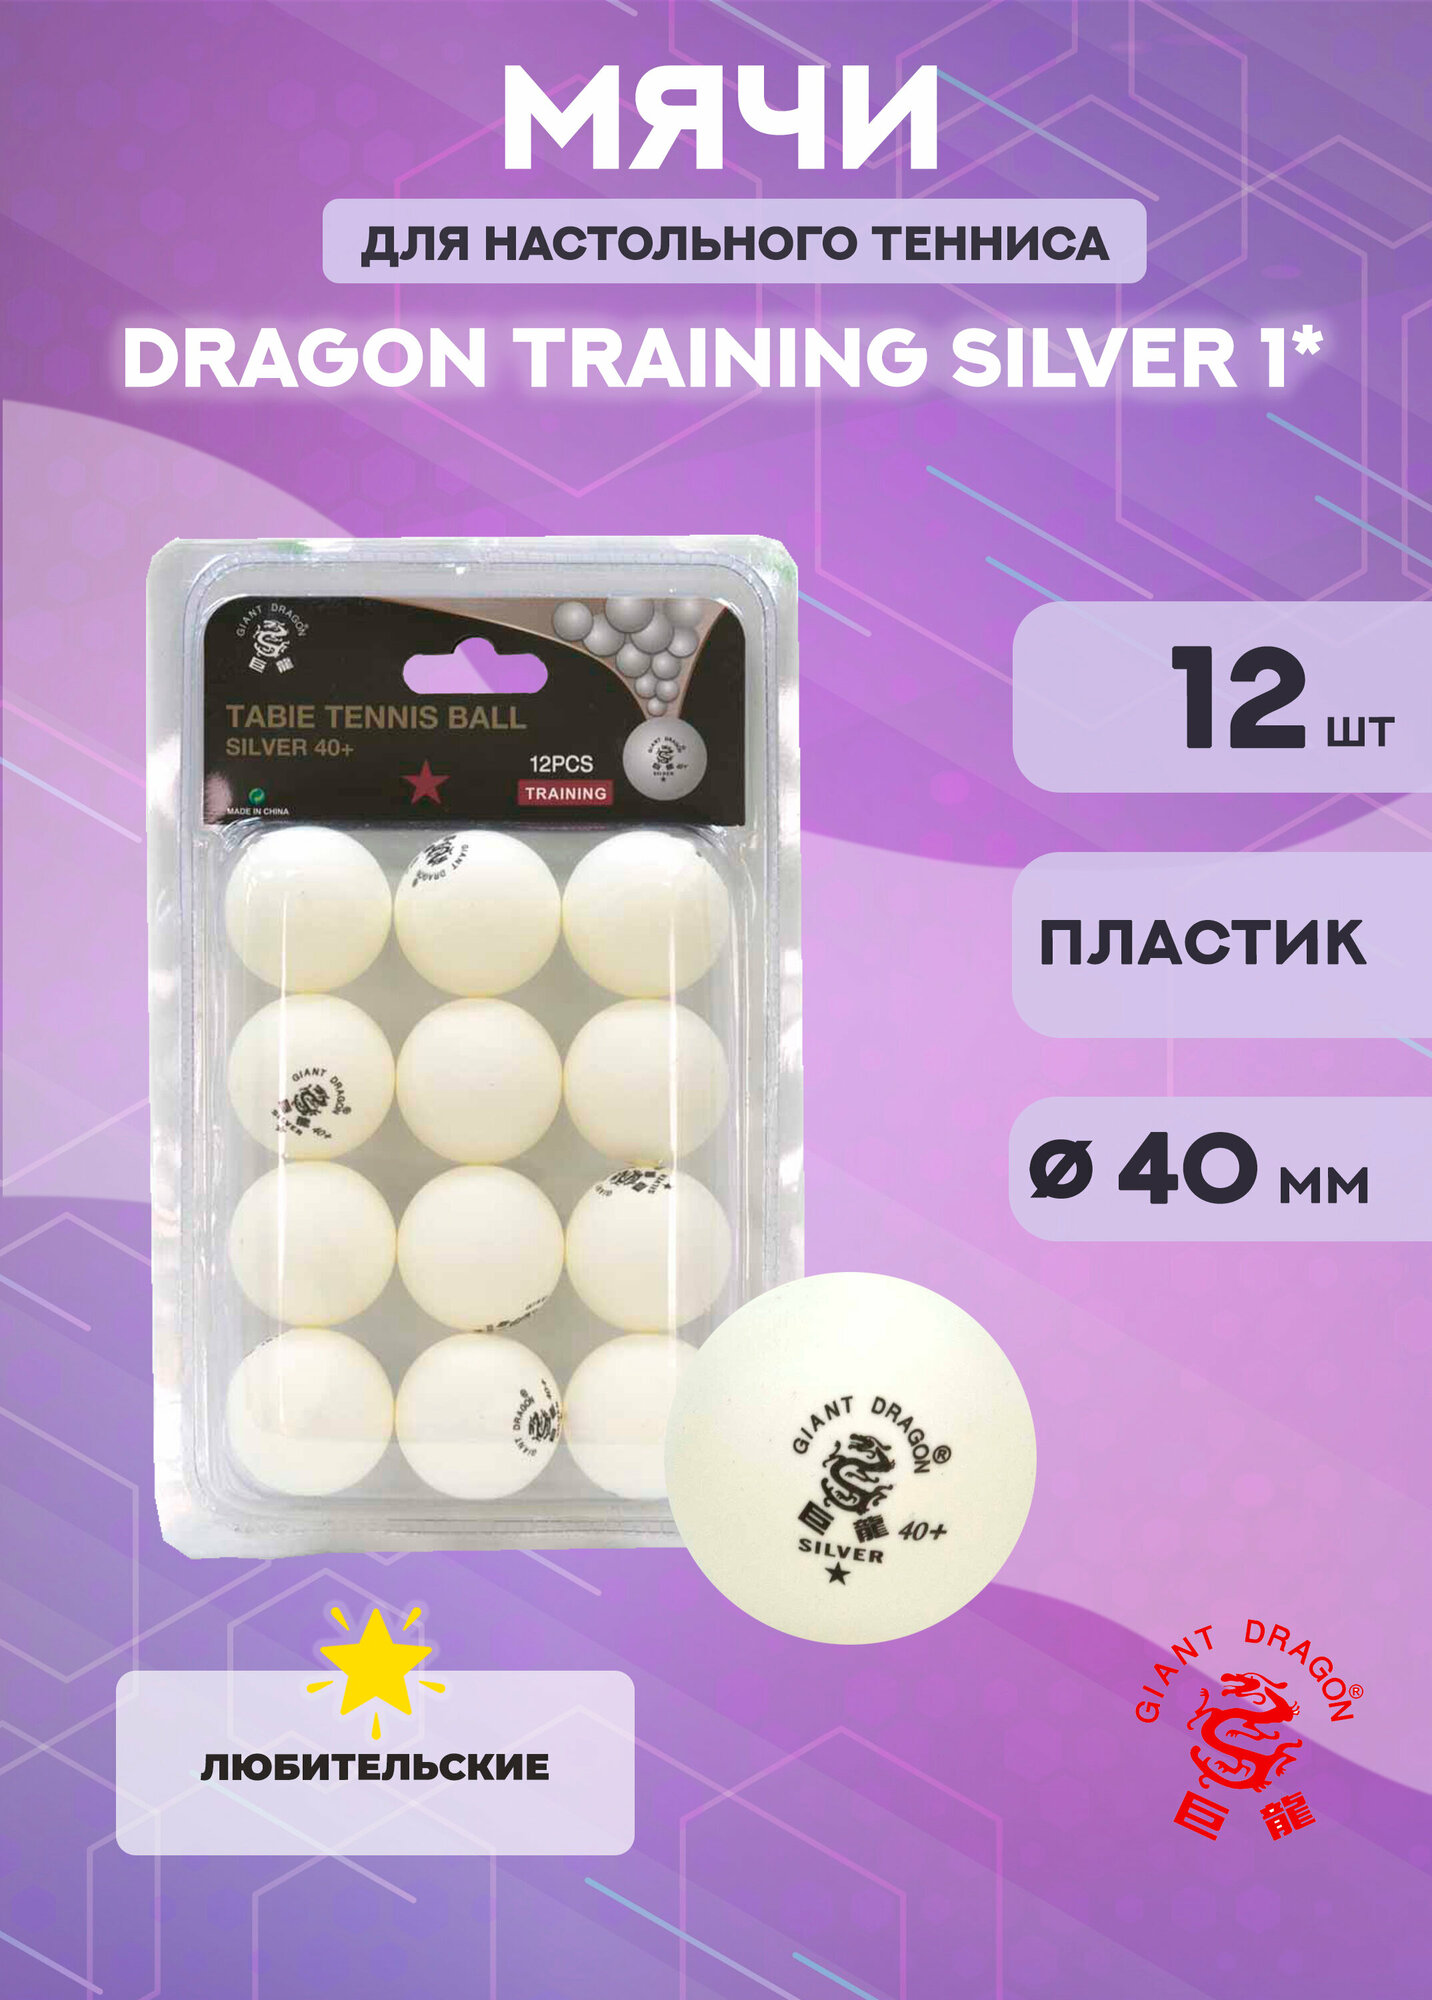 Мячи для настольного тенниса Dragon Training Silver 1* (12 шт, белые)